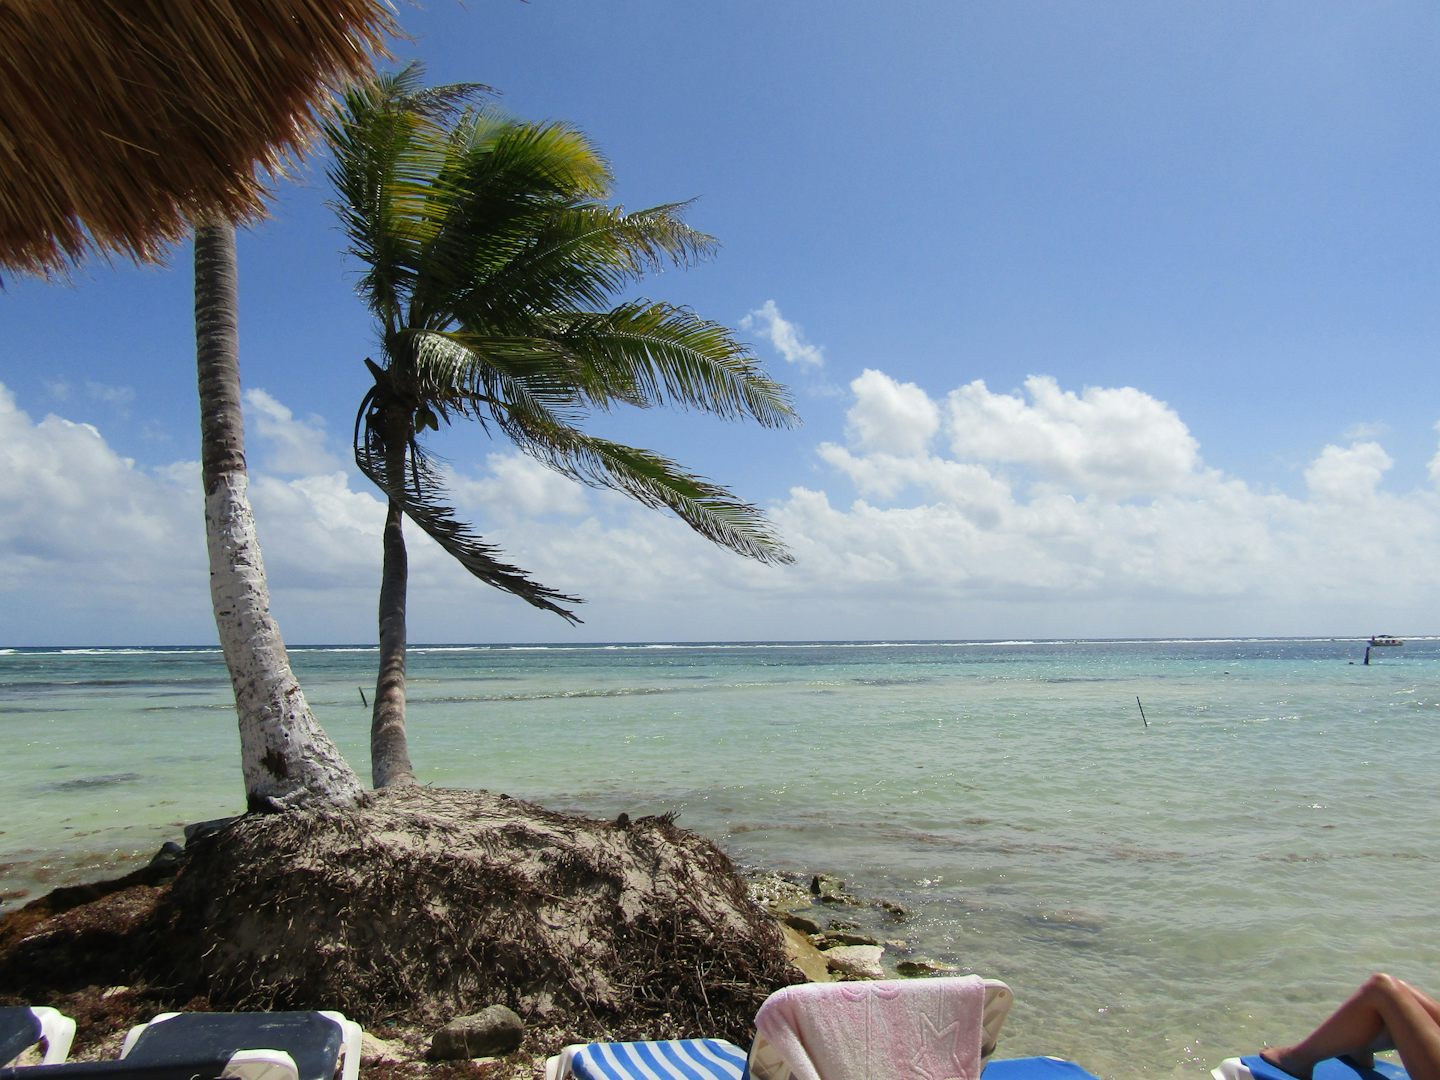 Beach at Costa Maya